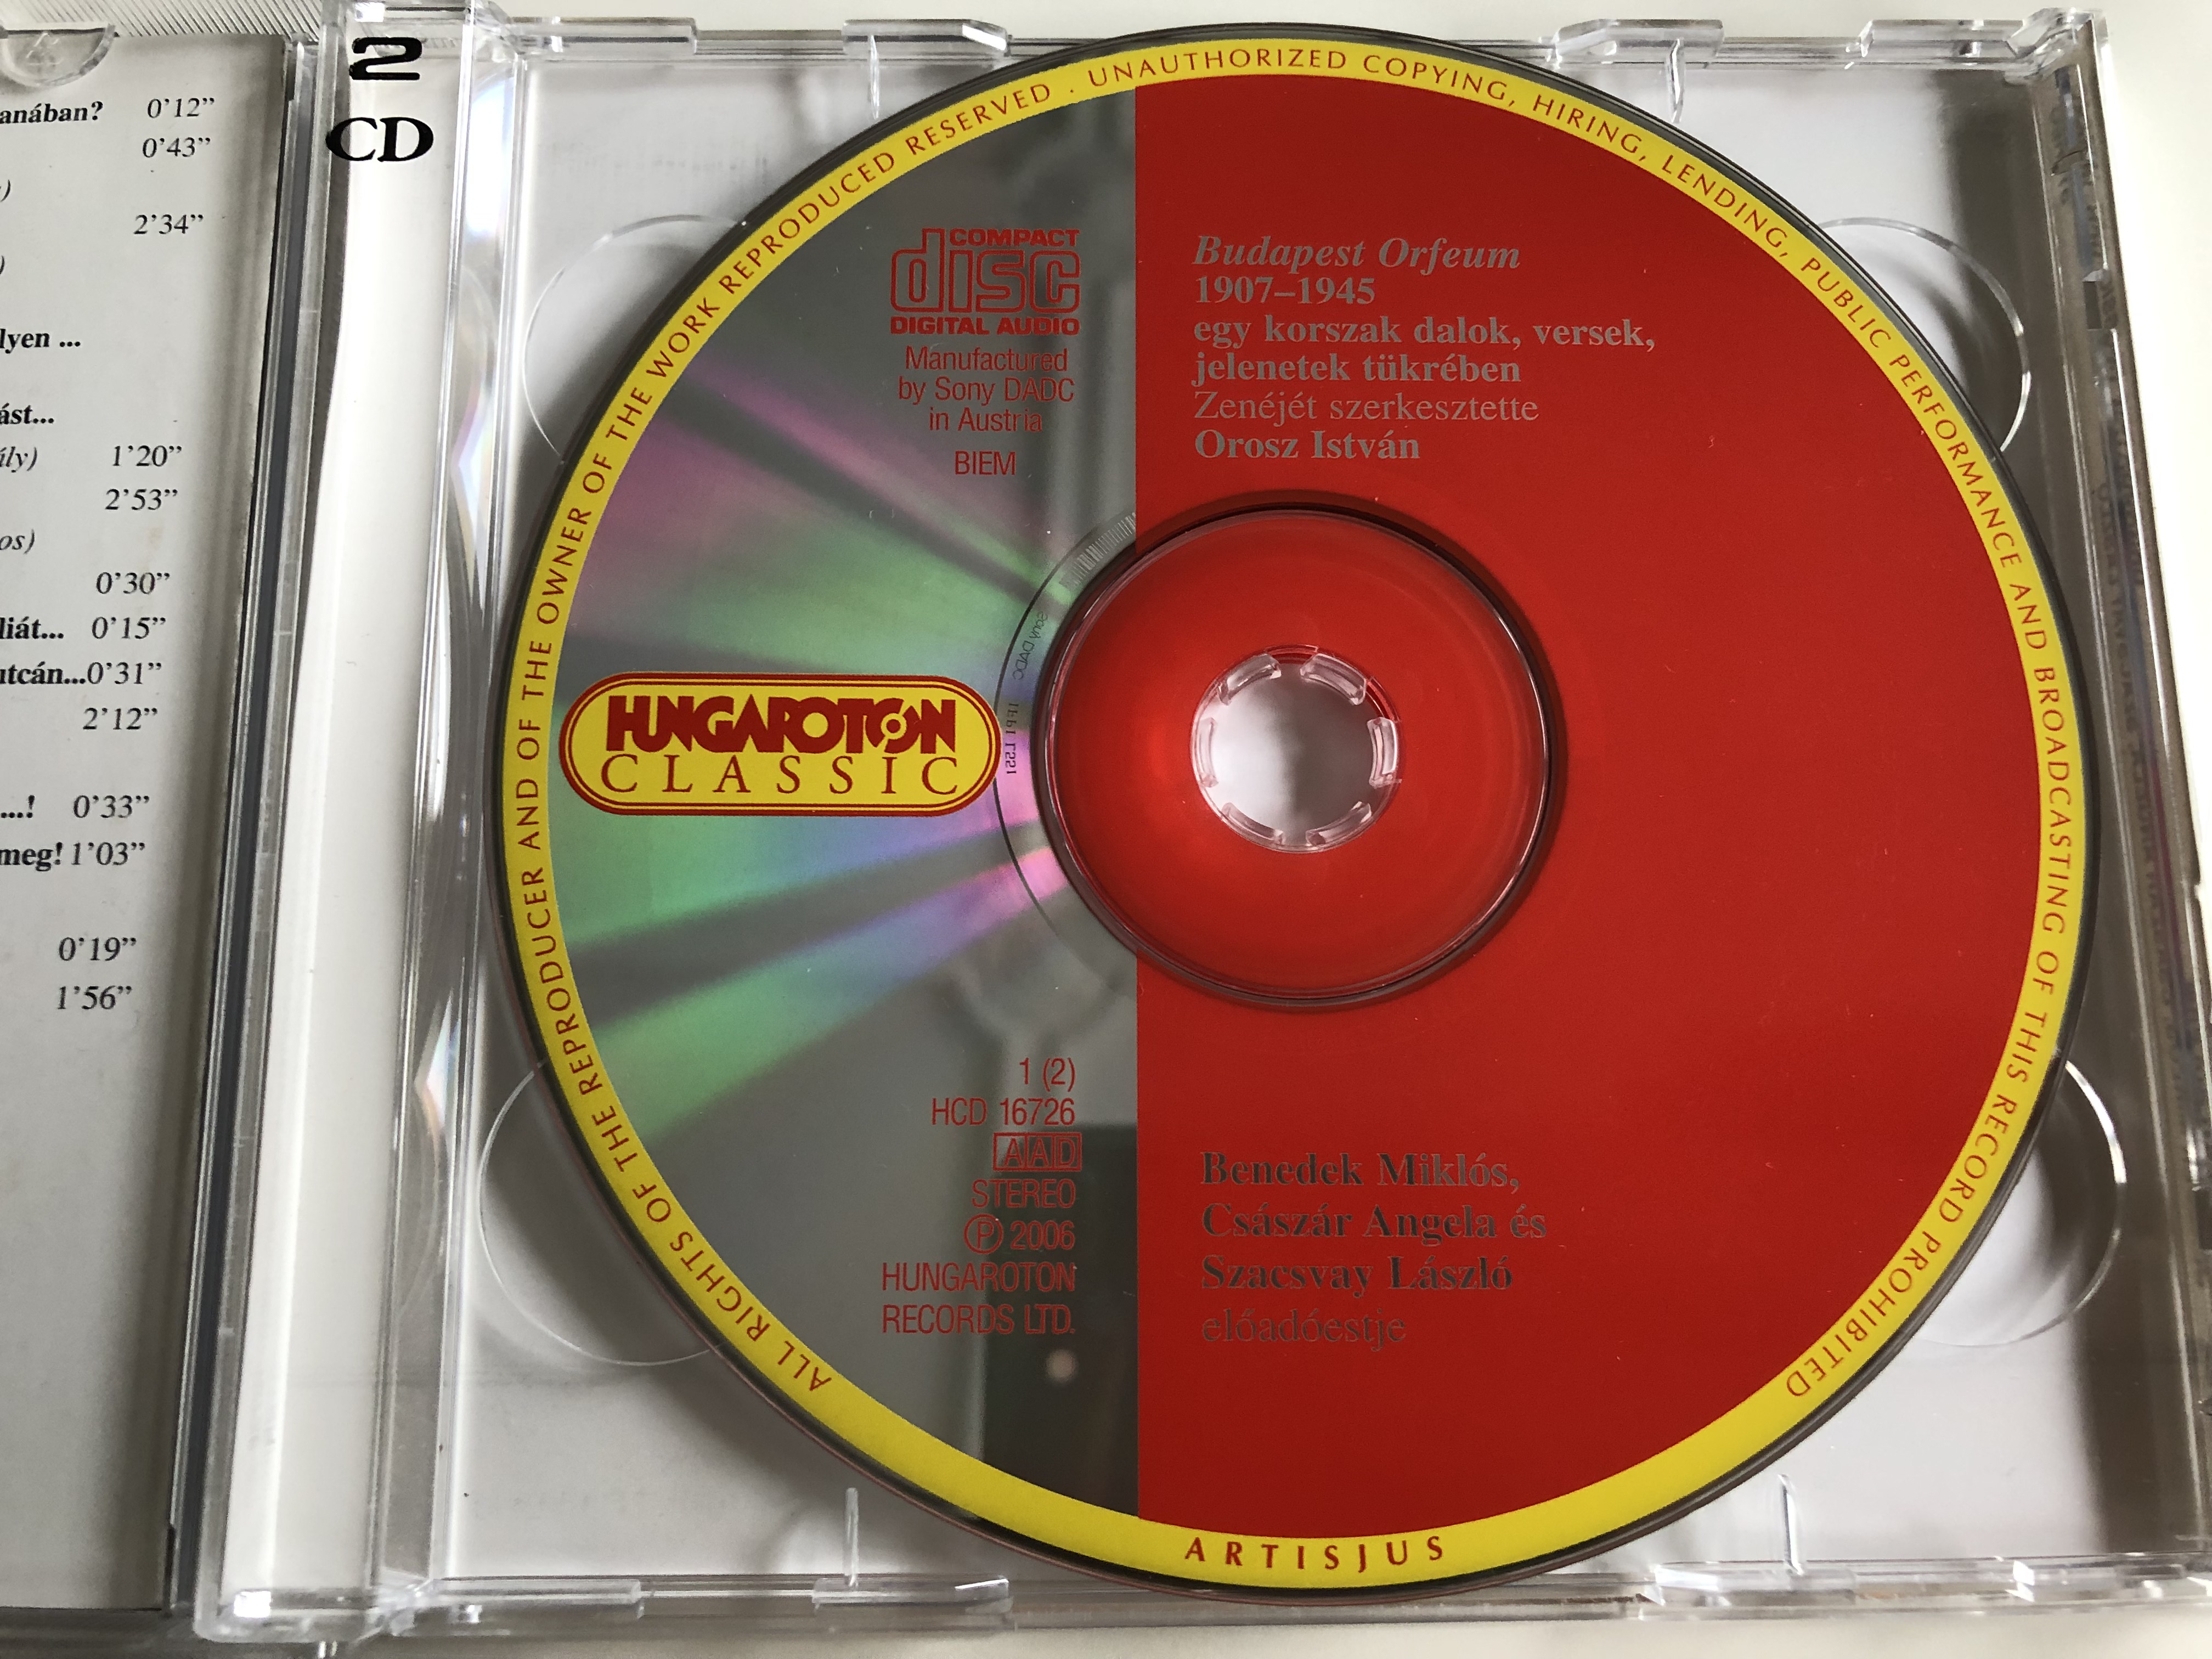 budapest-orfeum-szacsvay-l-szl-cs-sz-r-ang-la-benedek-mikl-s-hungaroton-classic-audio-cd-2006-hcd-16726-27-6-.jpg